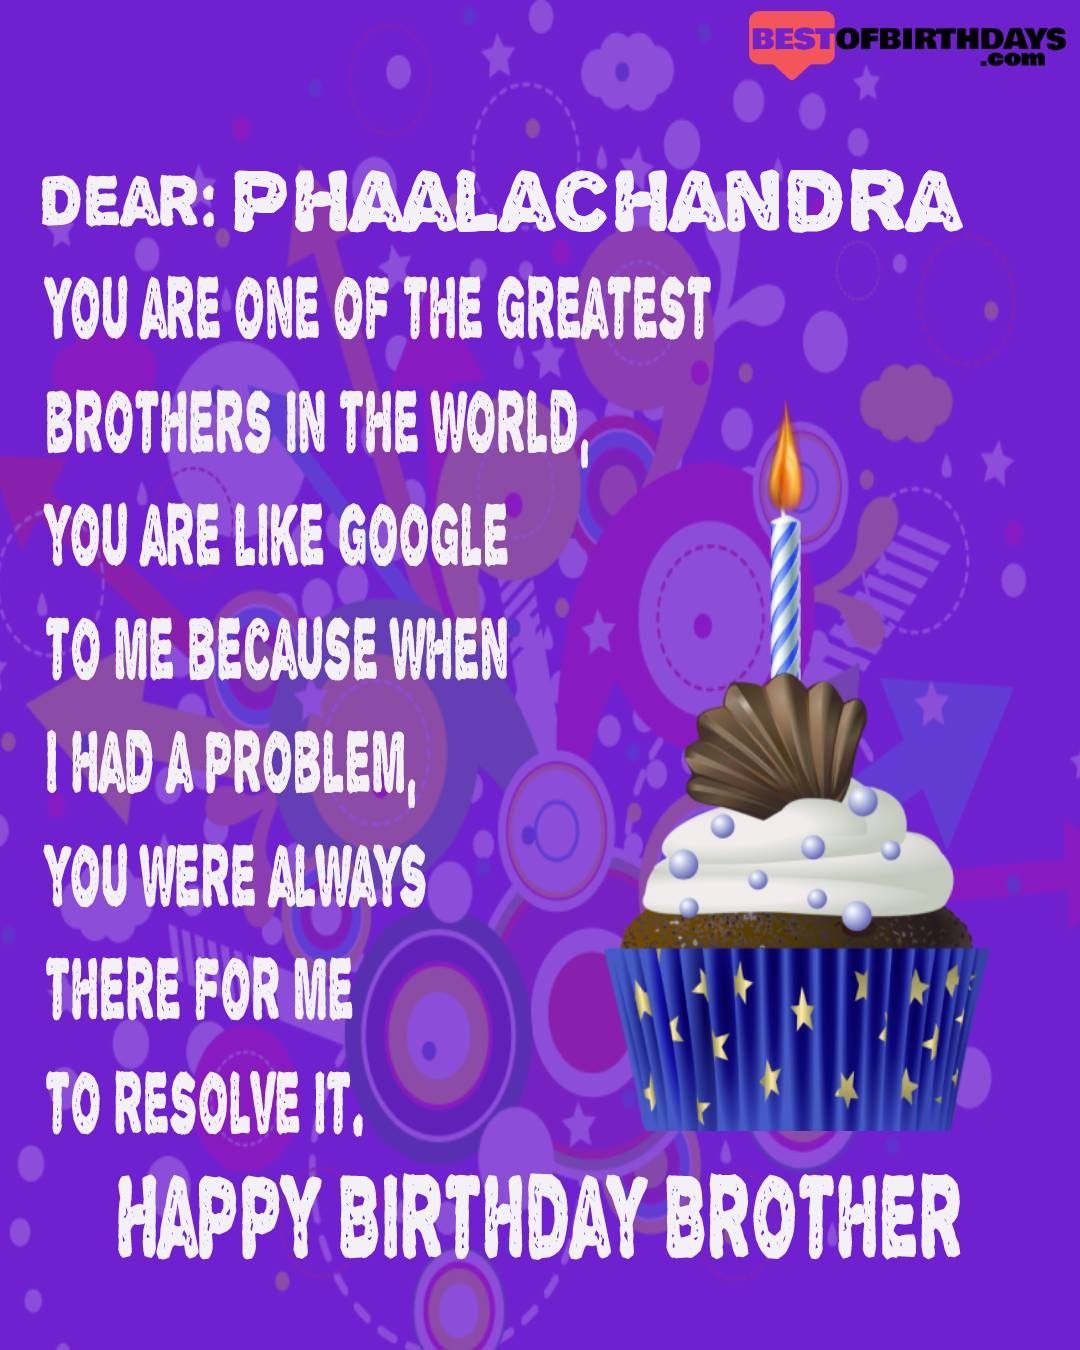 Happy birthday phaalachandra bhai brother bro